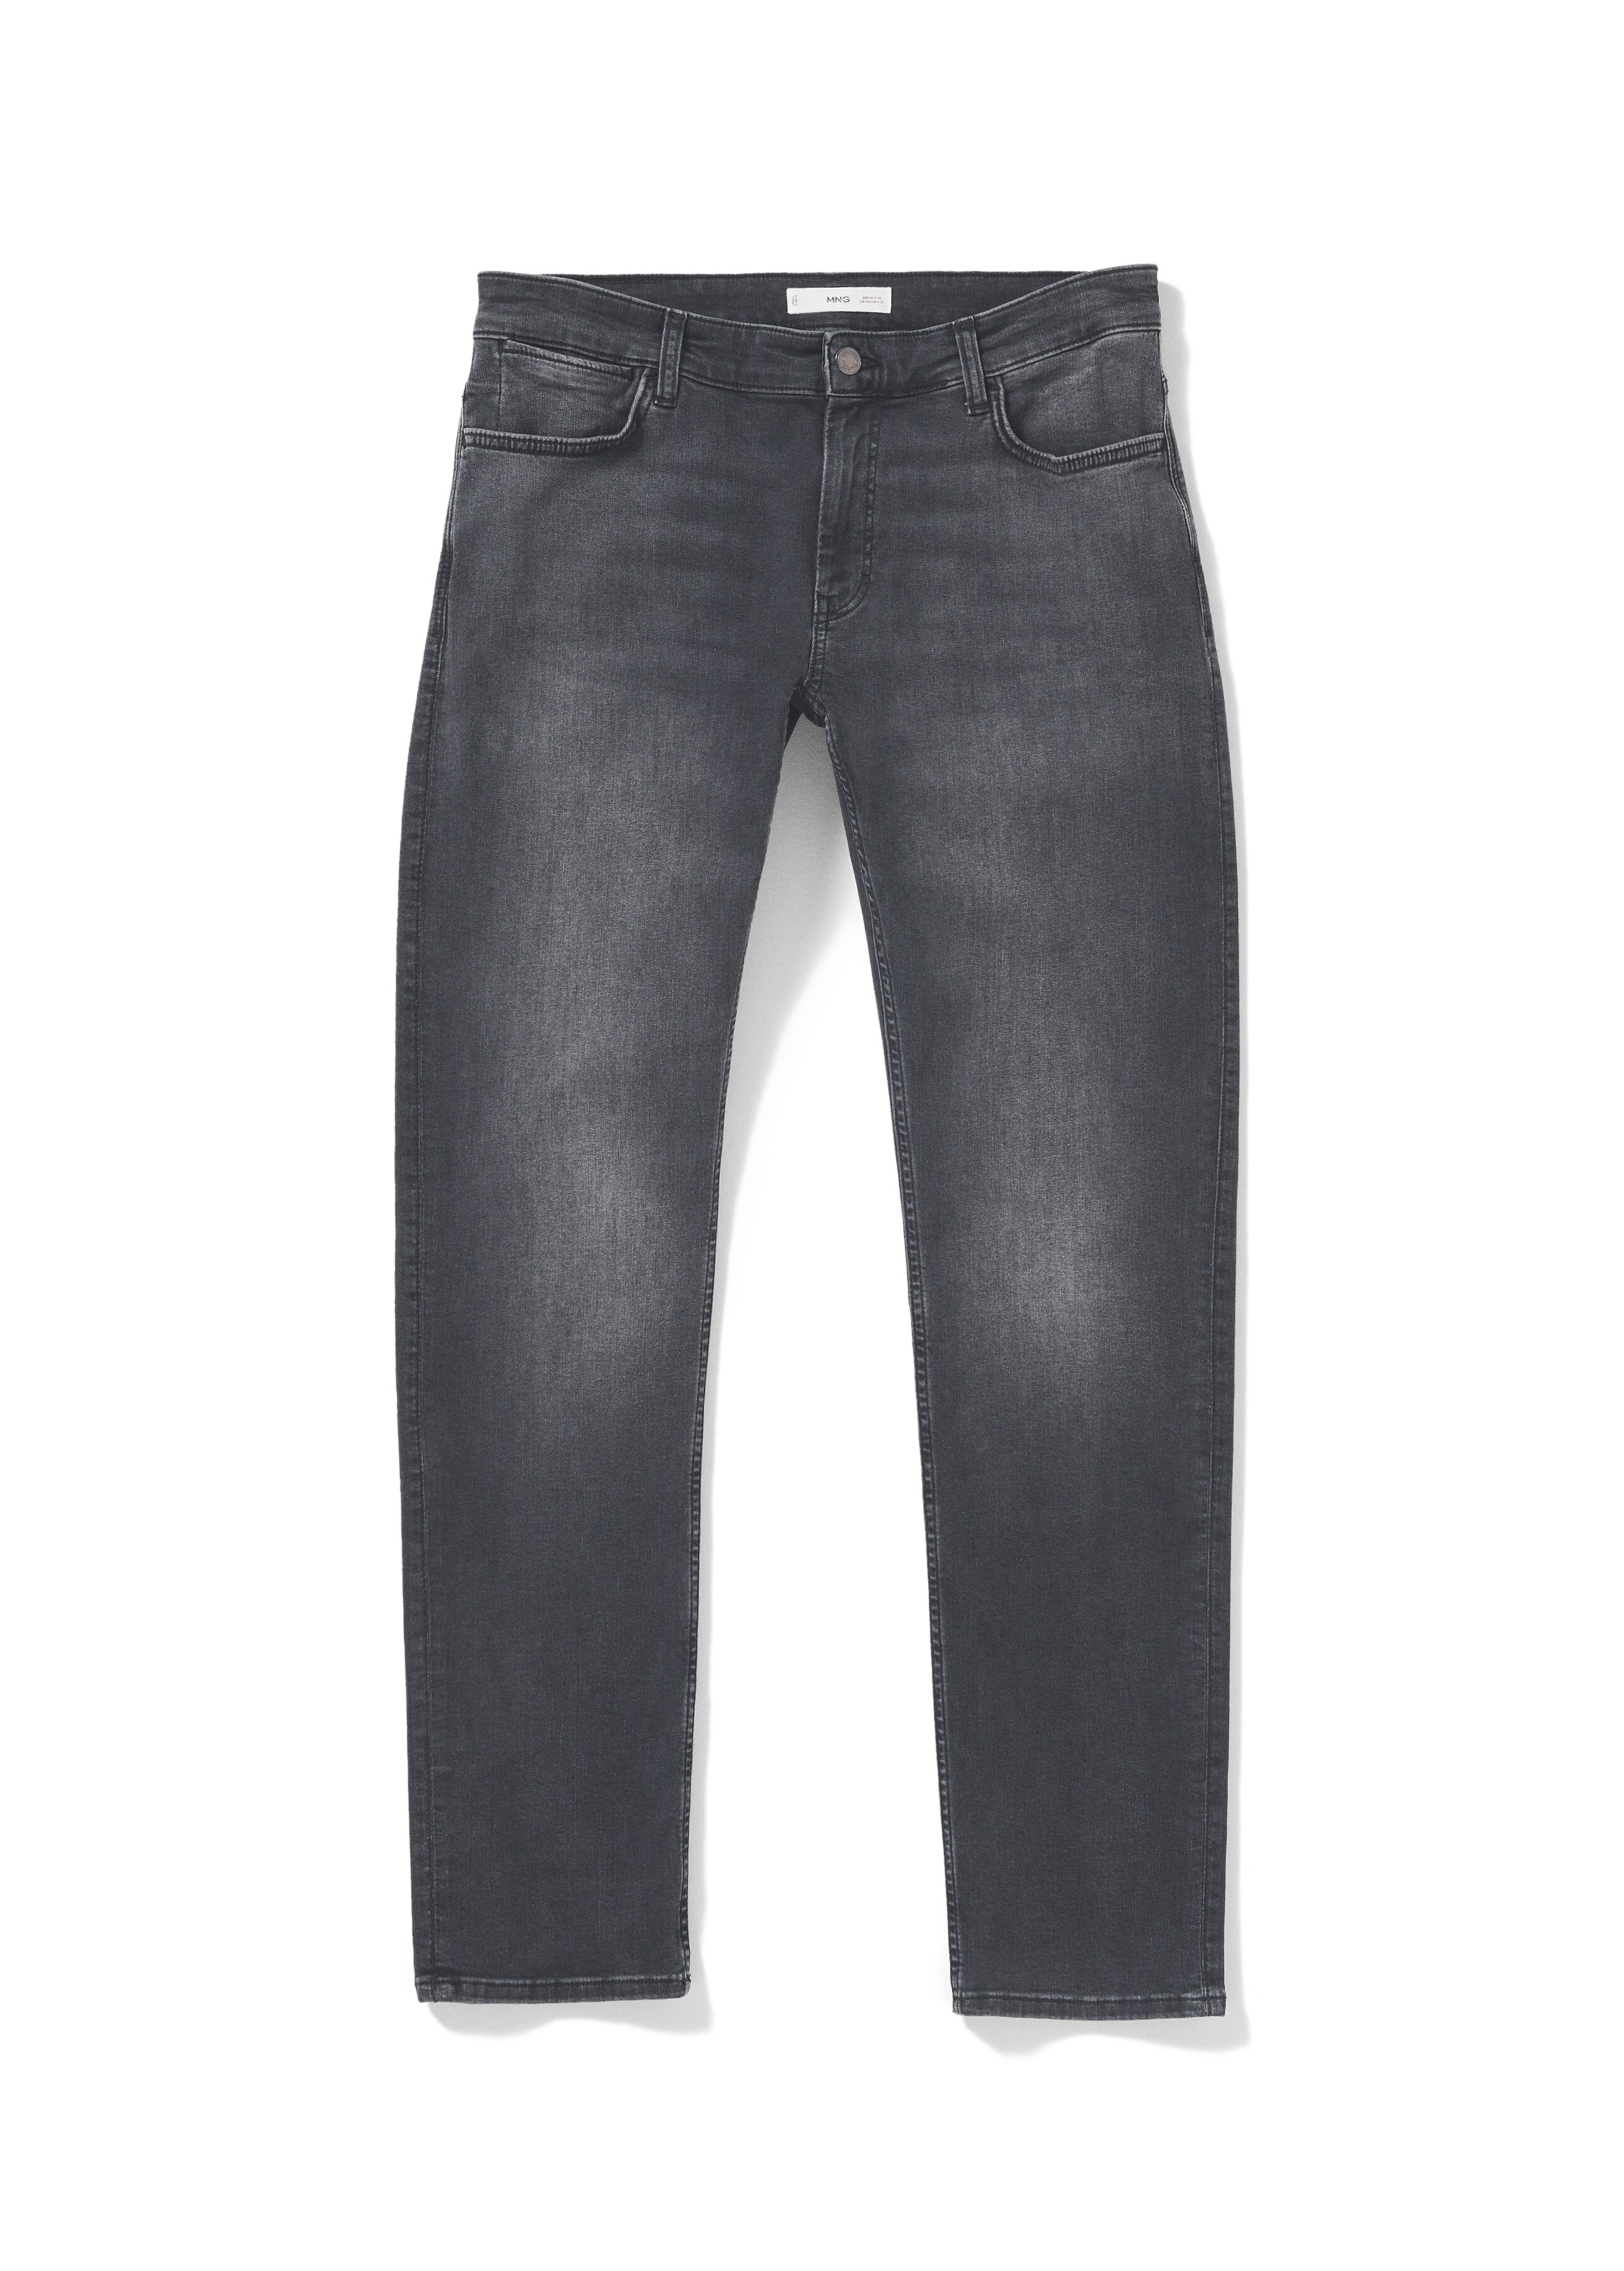 Jeans Patrick slim fit Ultra Soft Touch - Dettaglio dell'articolo 9